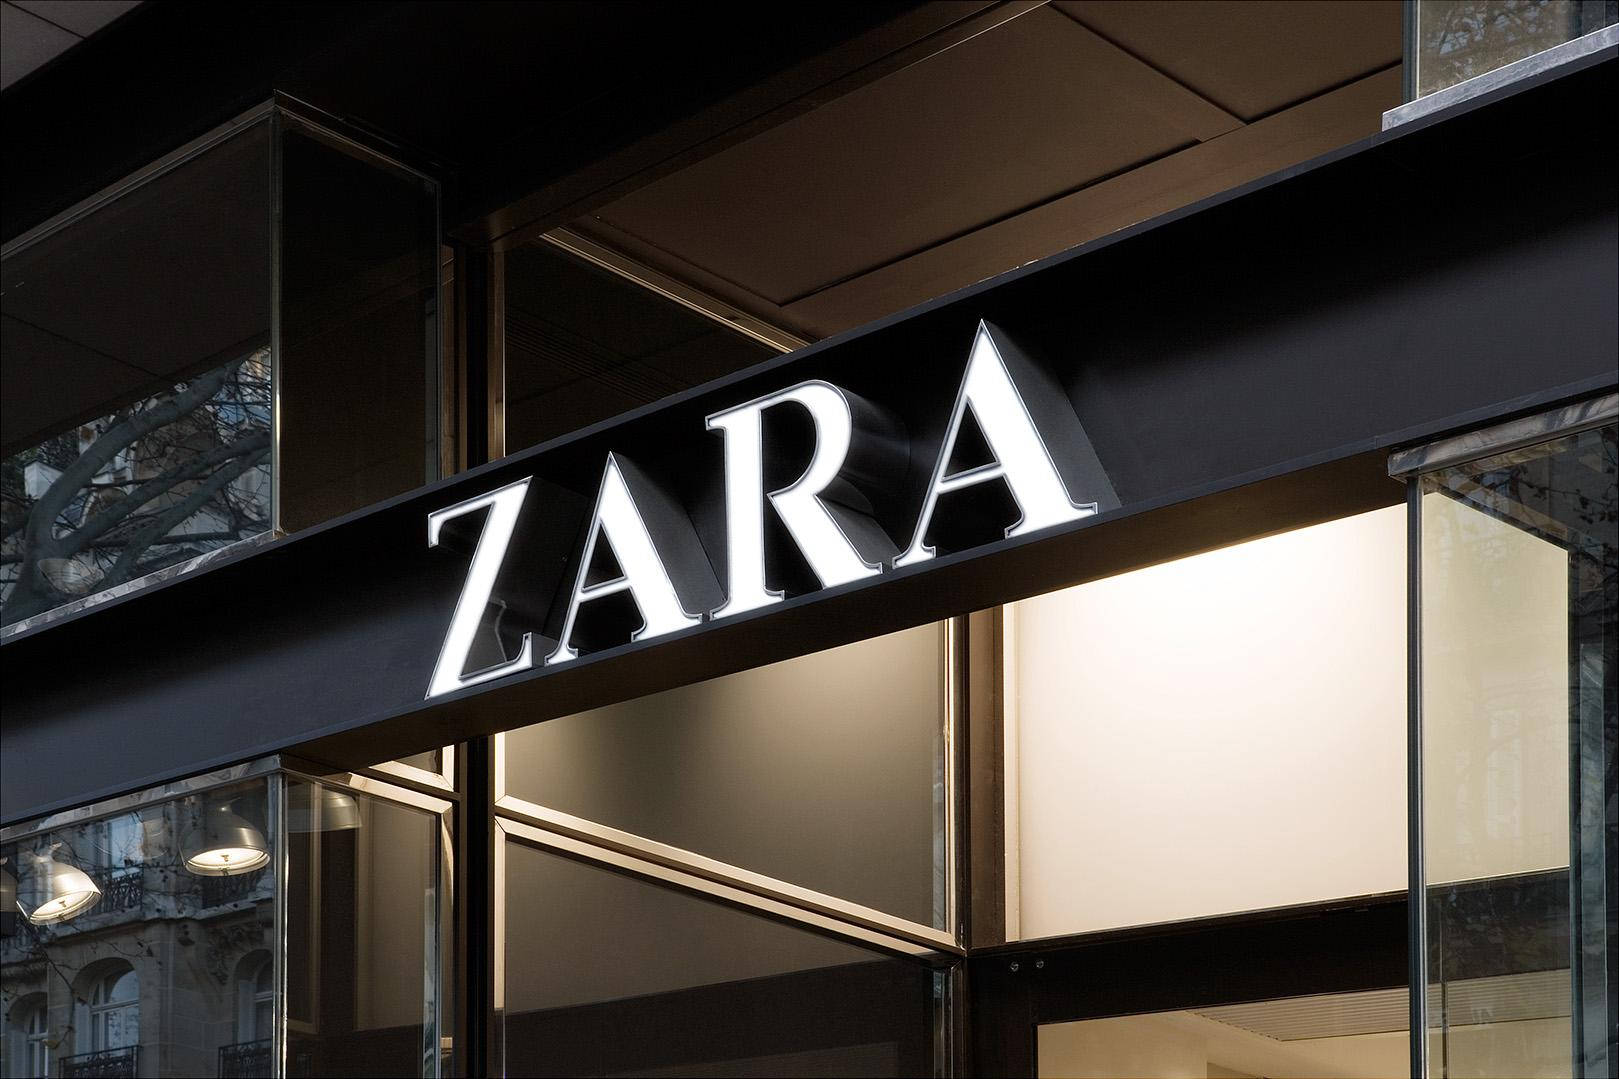 Zara Fashion Store Signage Background